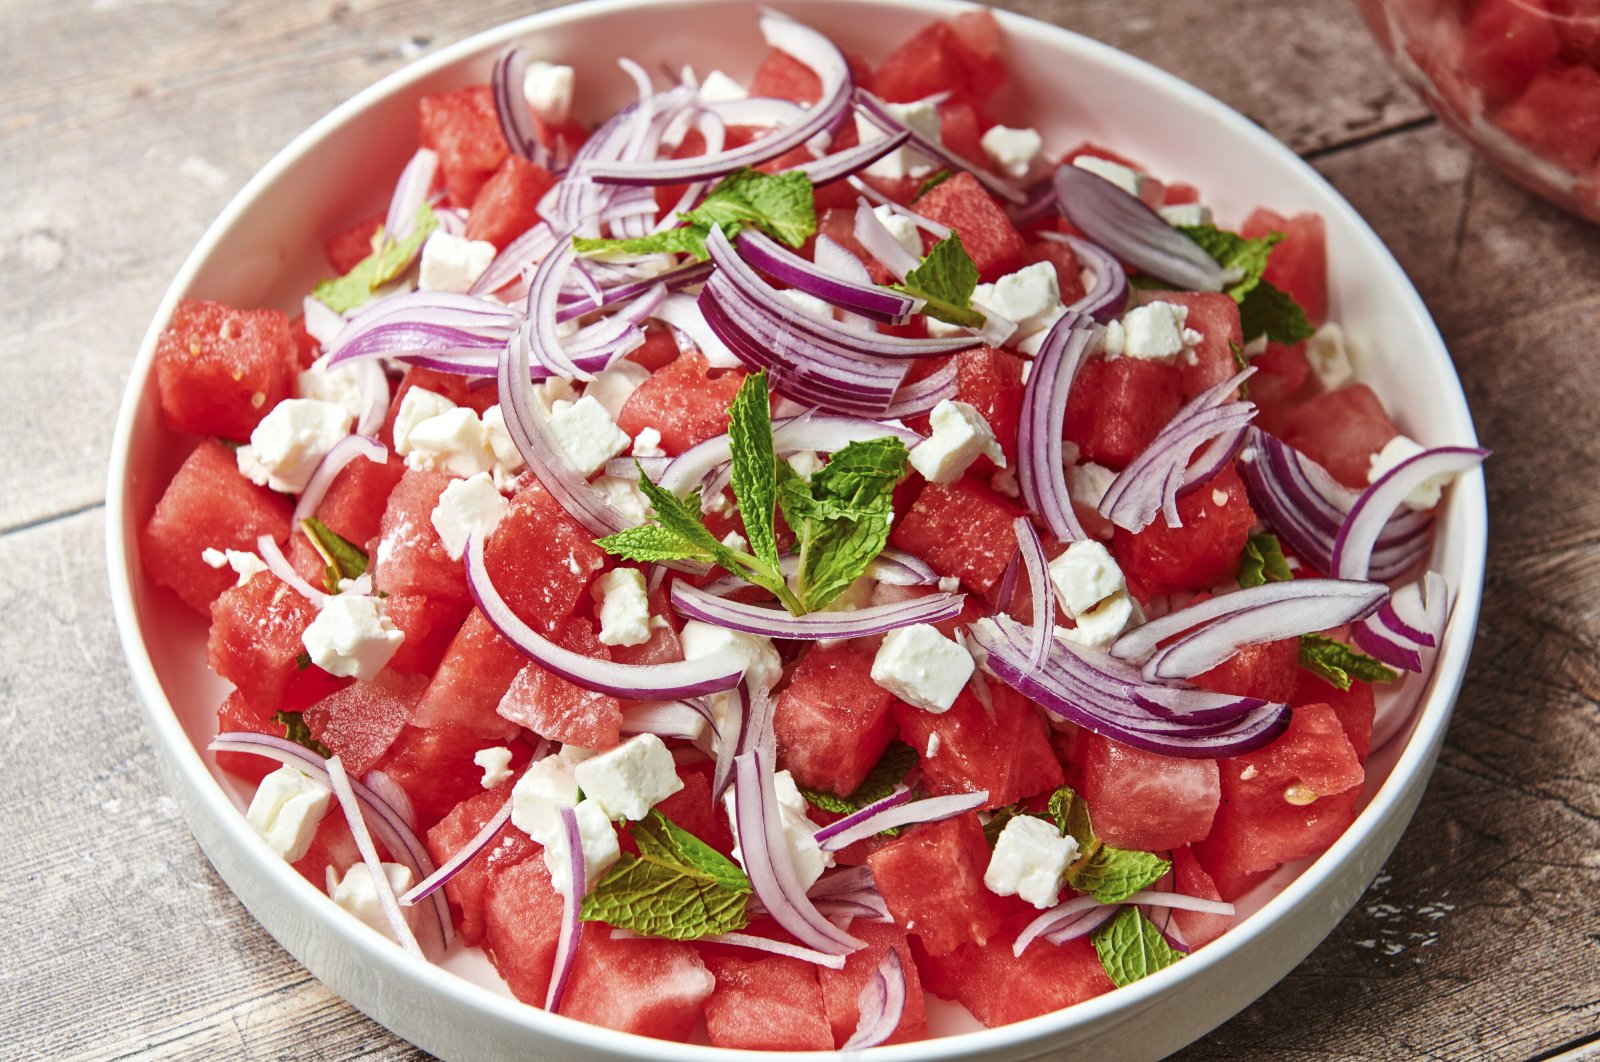 Salad Feta Semangka: Mudah, sehat, menyegarkan